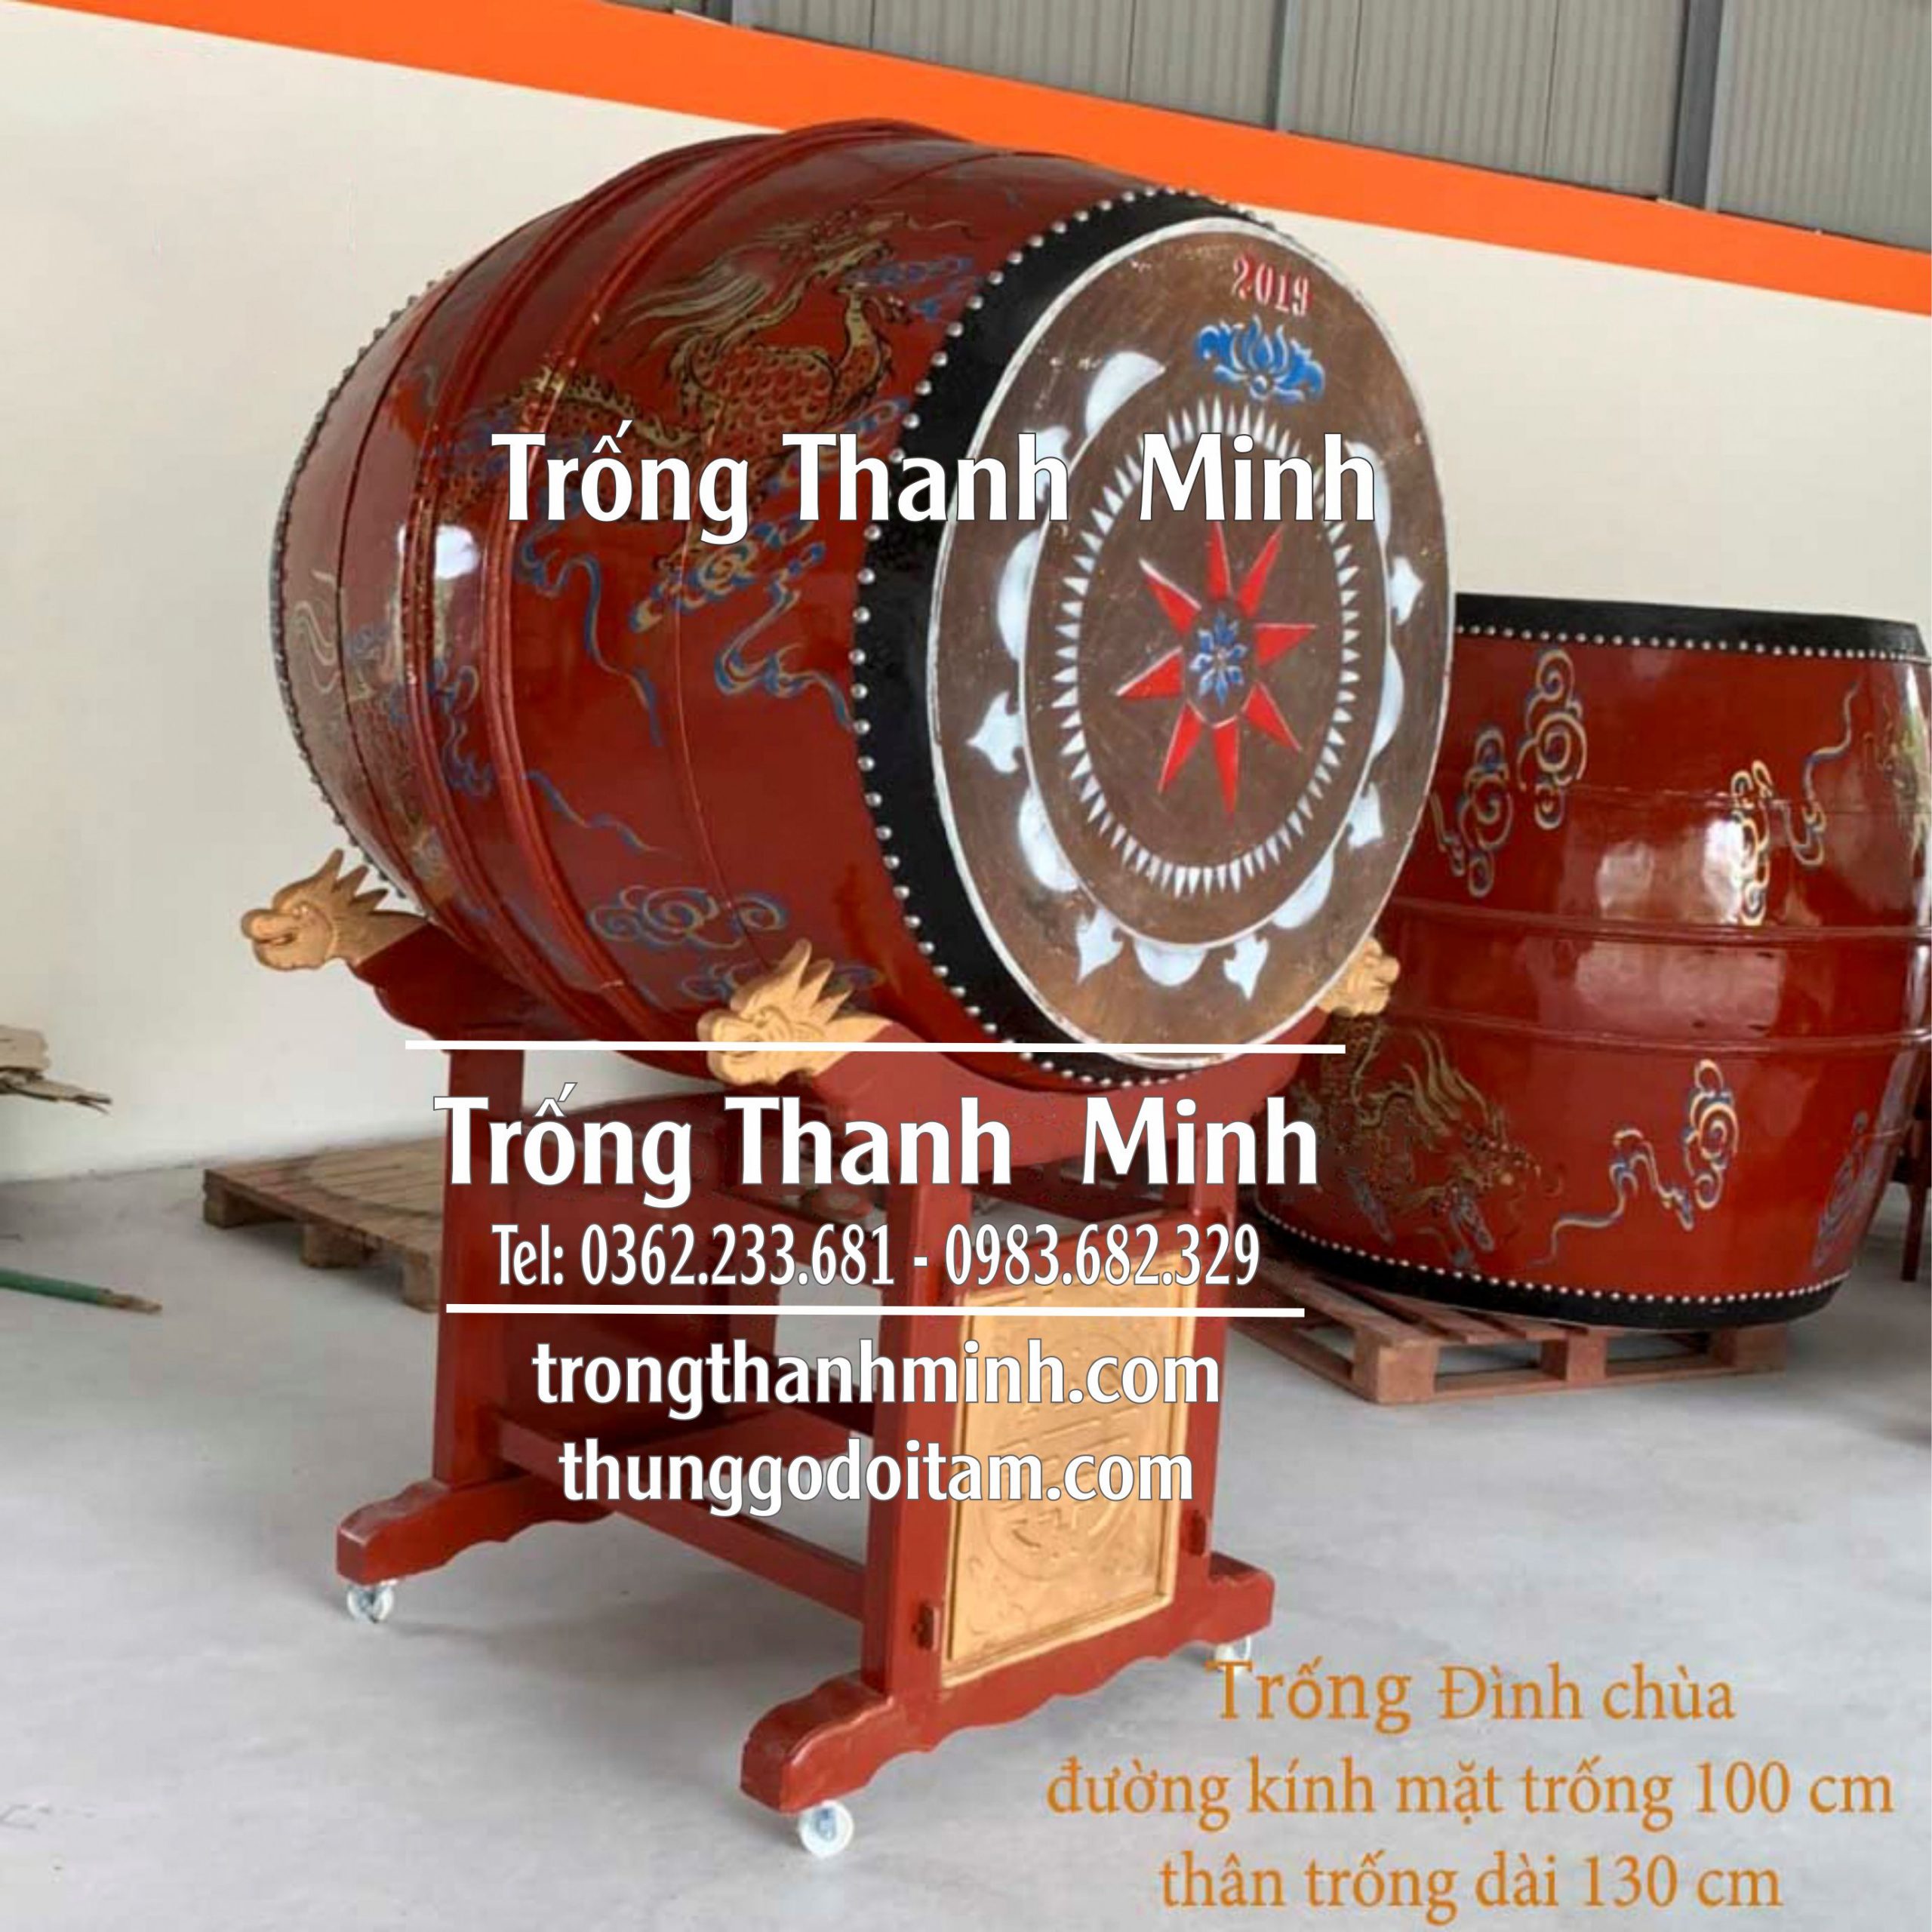 Xưởng sản xuất Trống Chùa Thanh Minh kích thước mặt trống 100cm cao 130cm